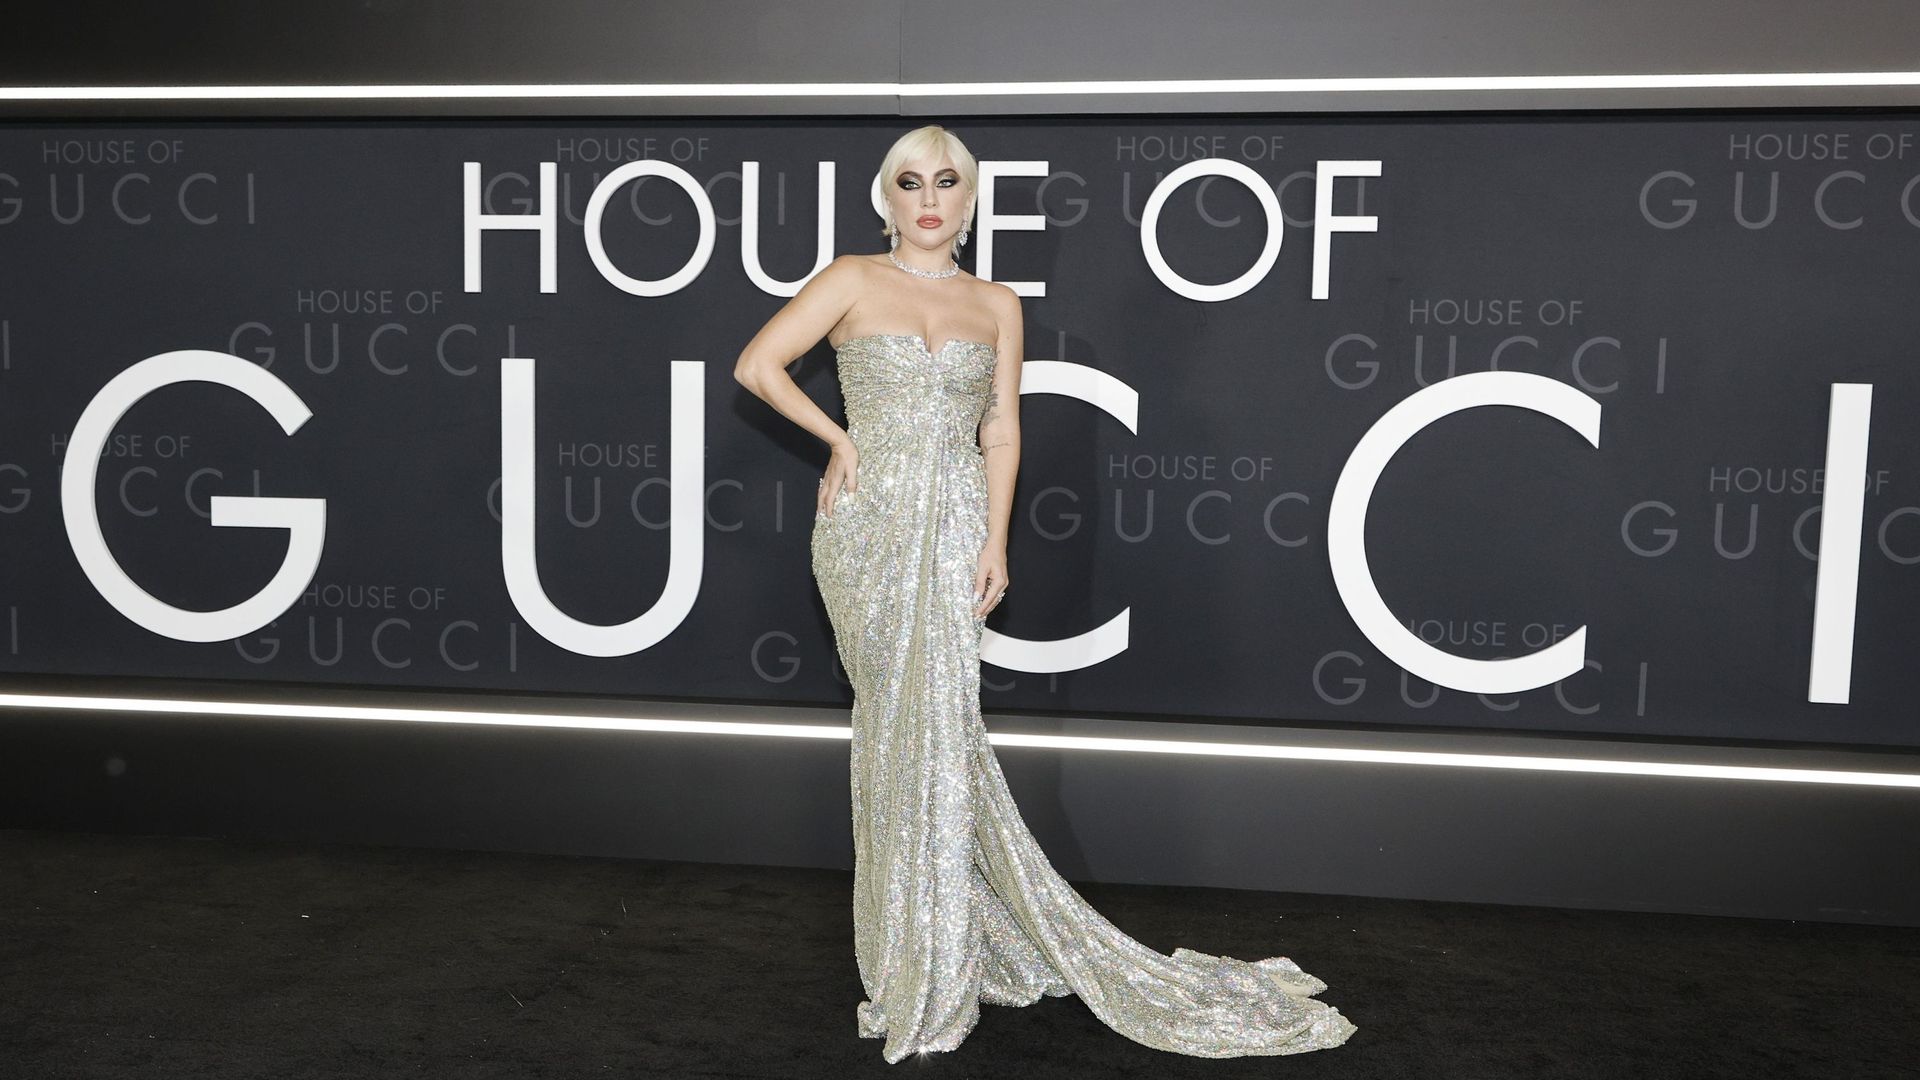 Lady Gaga assiste à la première du film "House Of Gucci" à Los Angeles, au Academy Museum of Motion Pictures, le 18 novembre 2021 à Los Angeles, Californie.